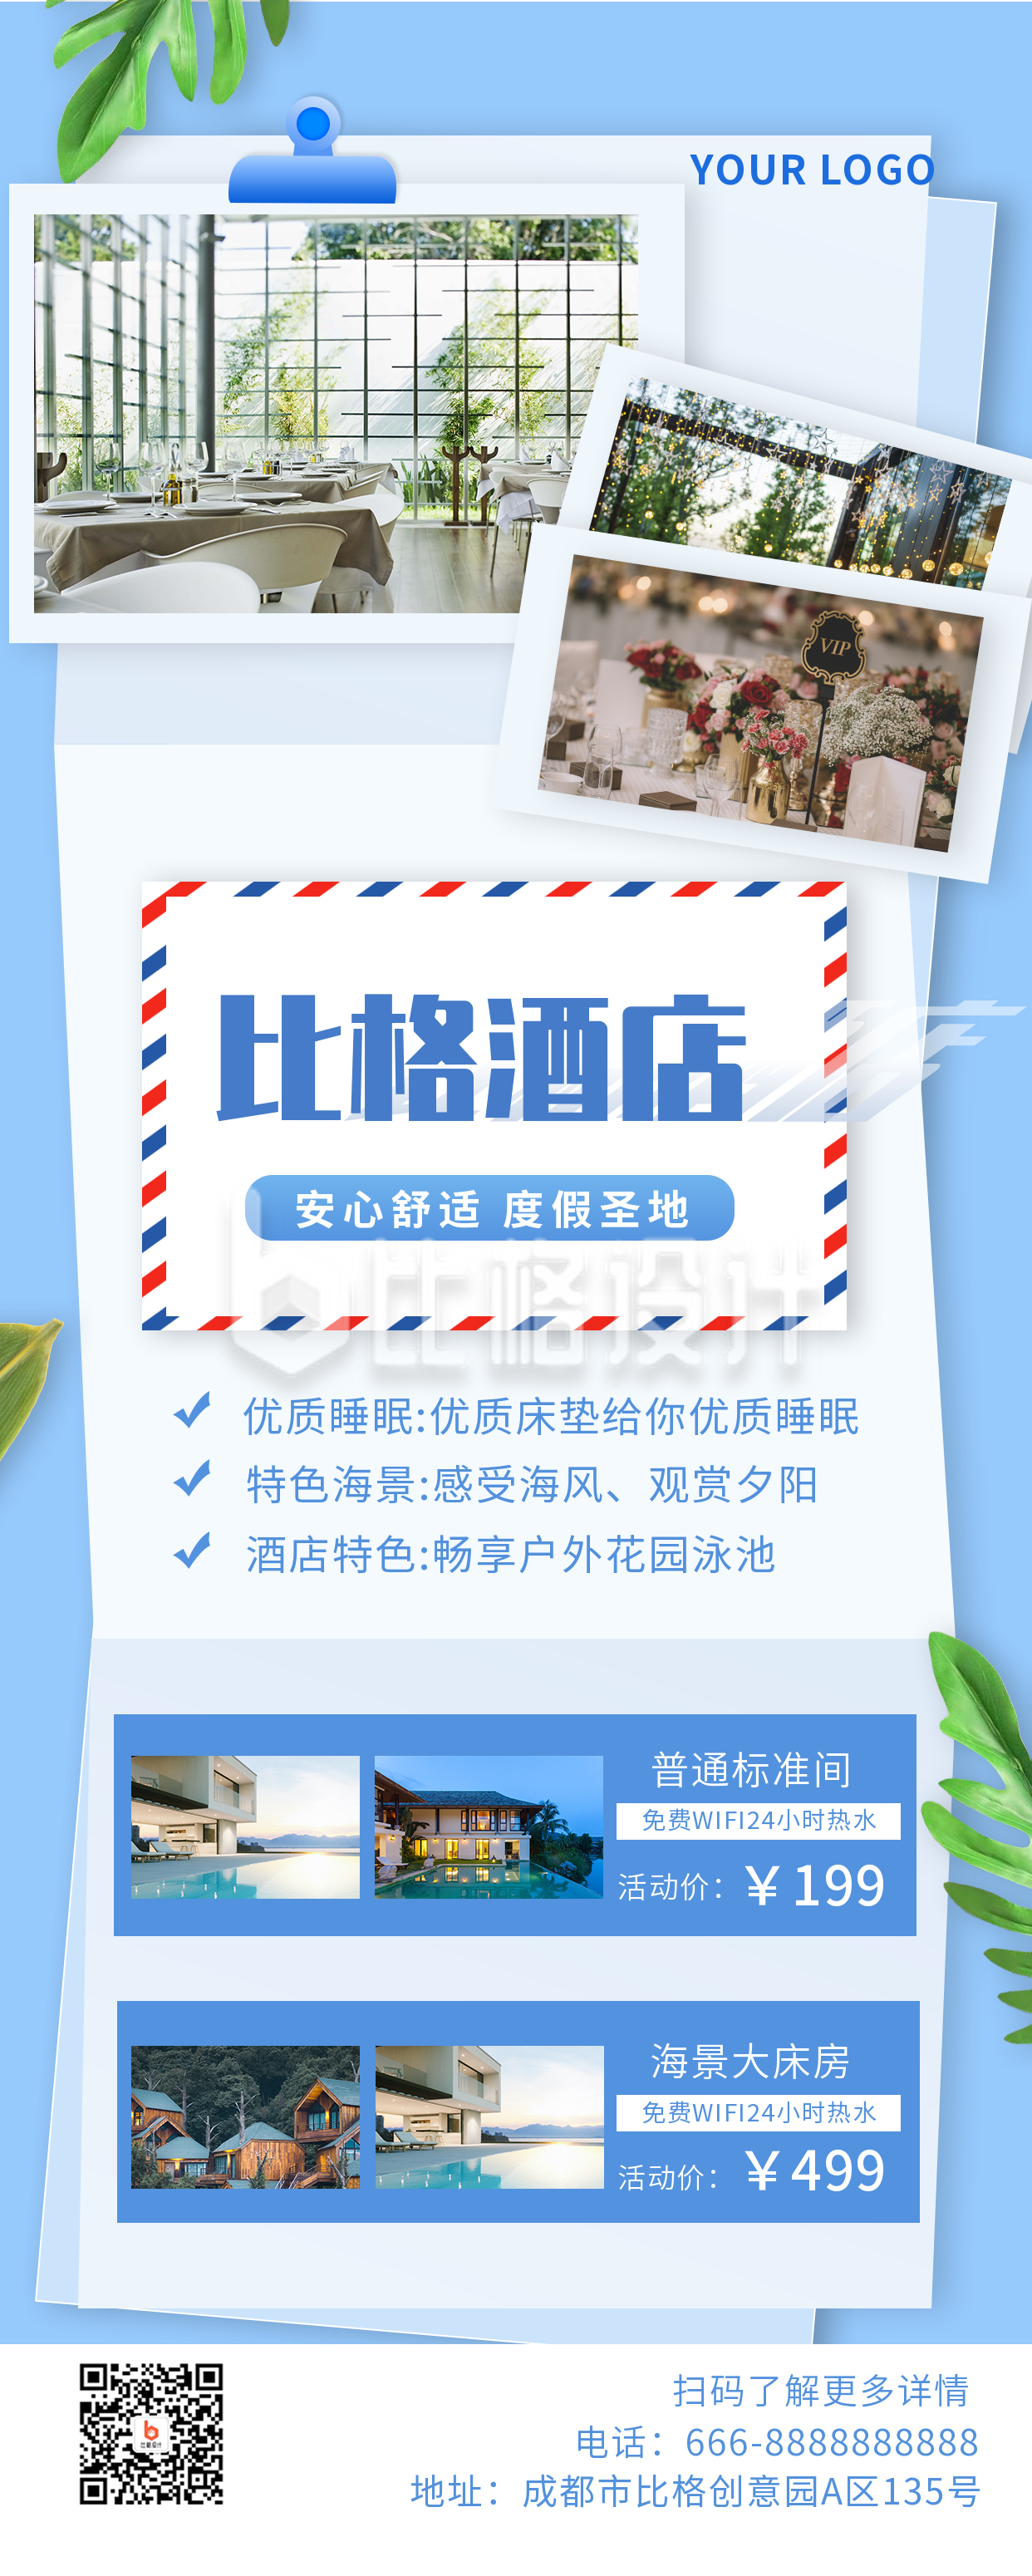 酒店介绍优惠活动旅游蓝色长图海报